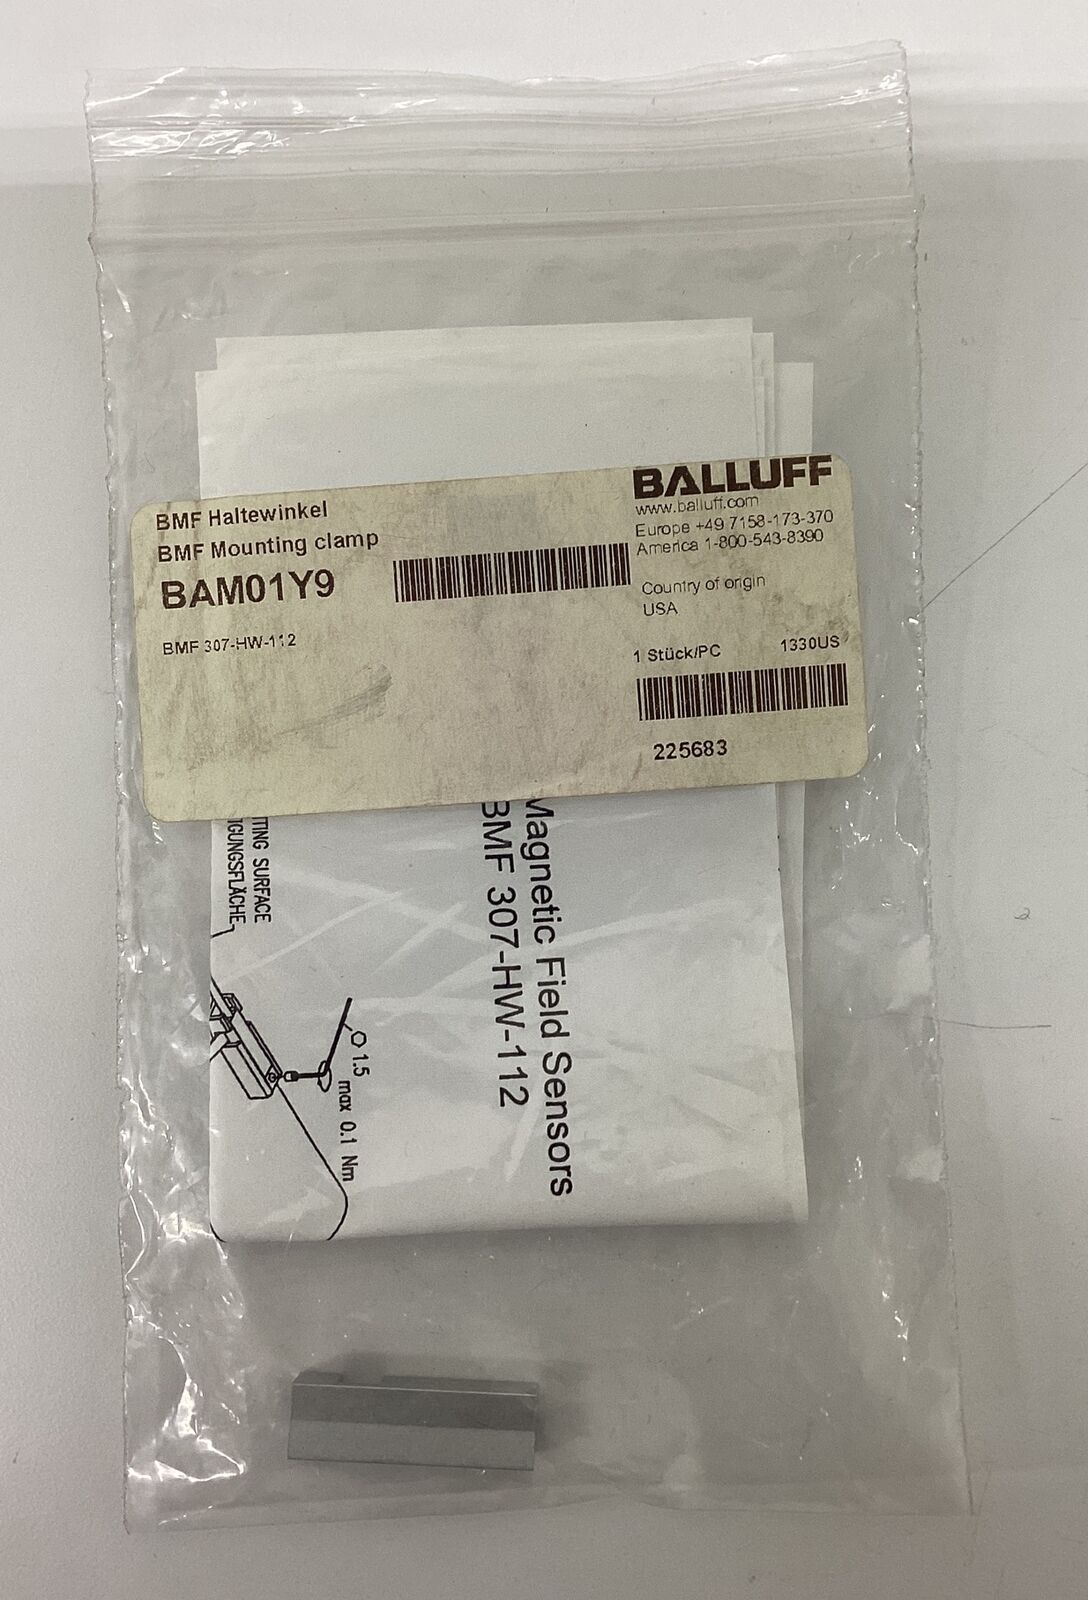 Balluff BAM01Y9 / BMF-307-HW-112 Sensor Mounting Clamp (GR101)